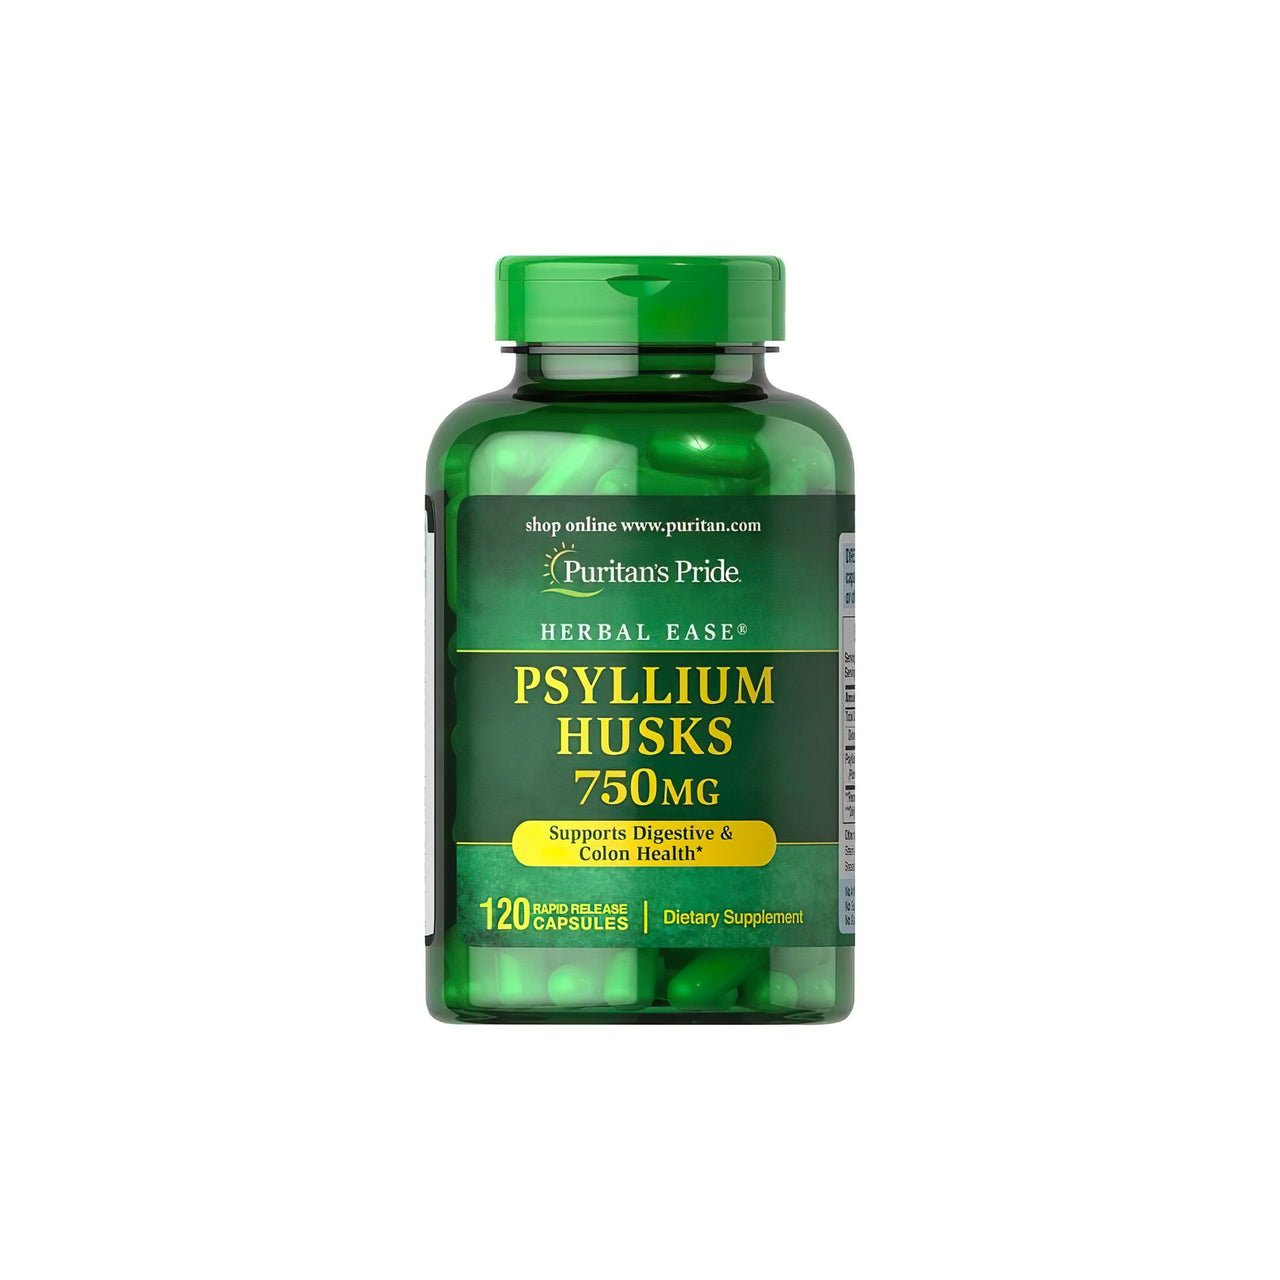 Ce flacon de Puritan's Pride Psyllium Husks 750 mg 120 Rapid Release Capsules est un détoxifiant naturel pour le système digestif. Il contient des écales de psyllium de première qualité.